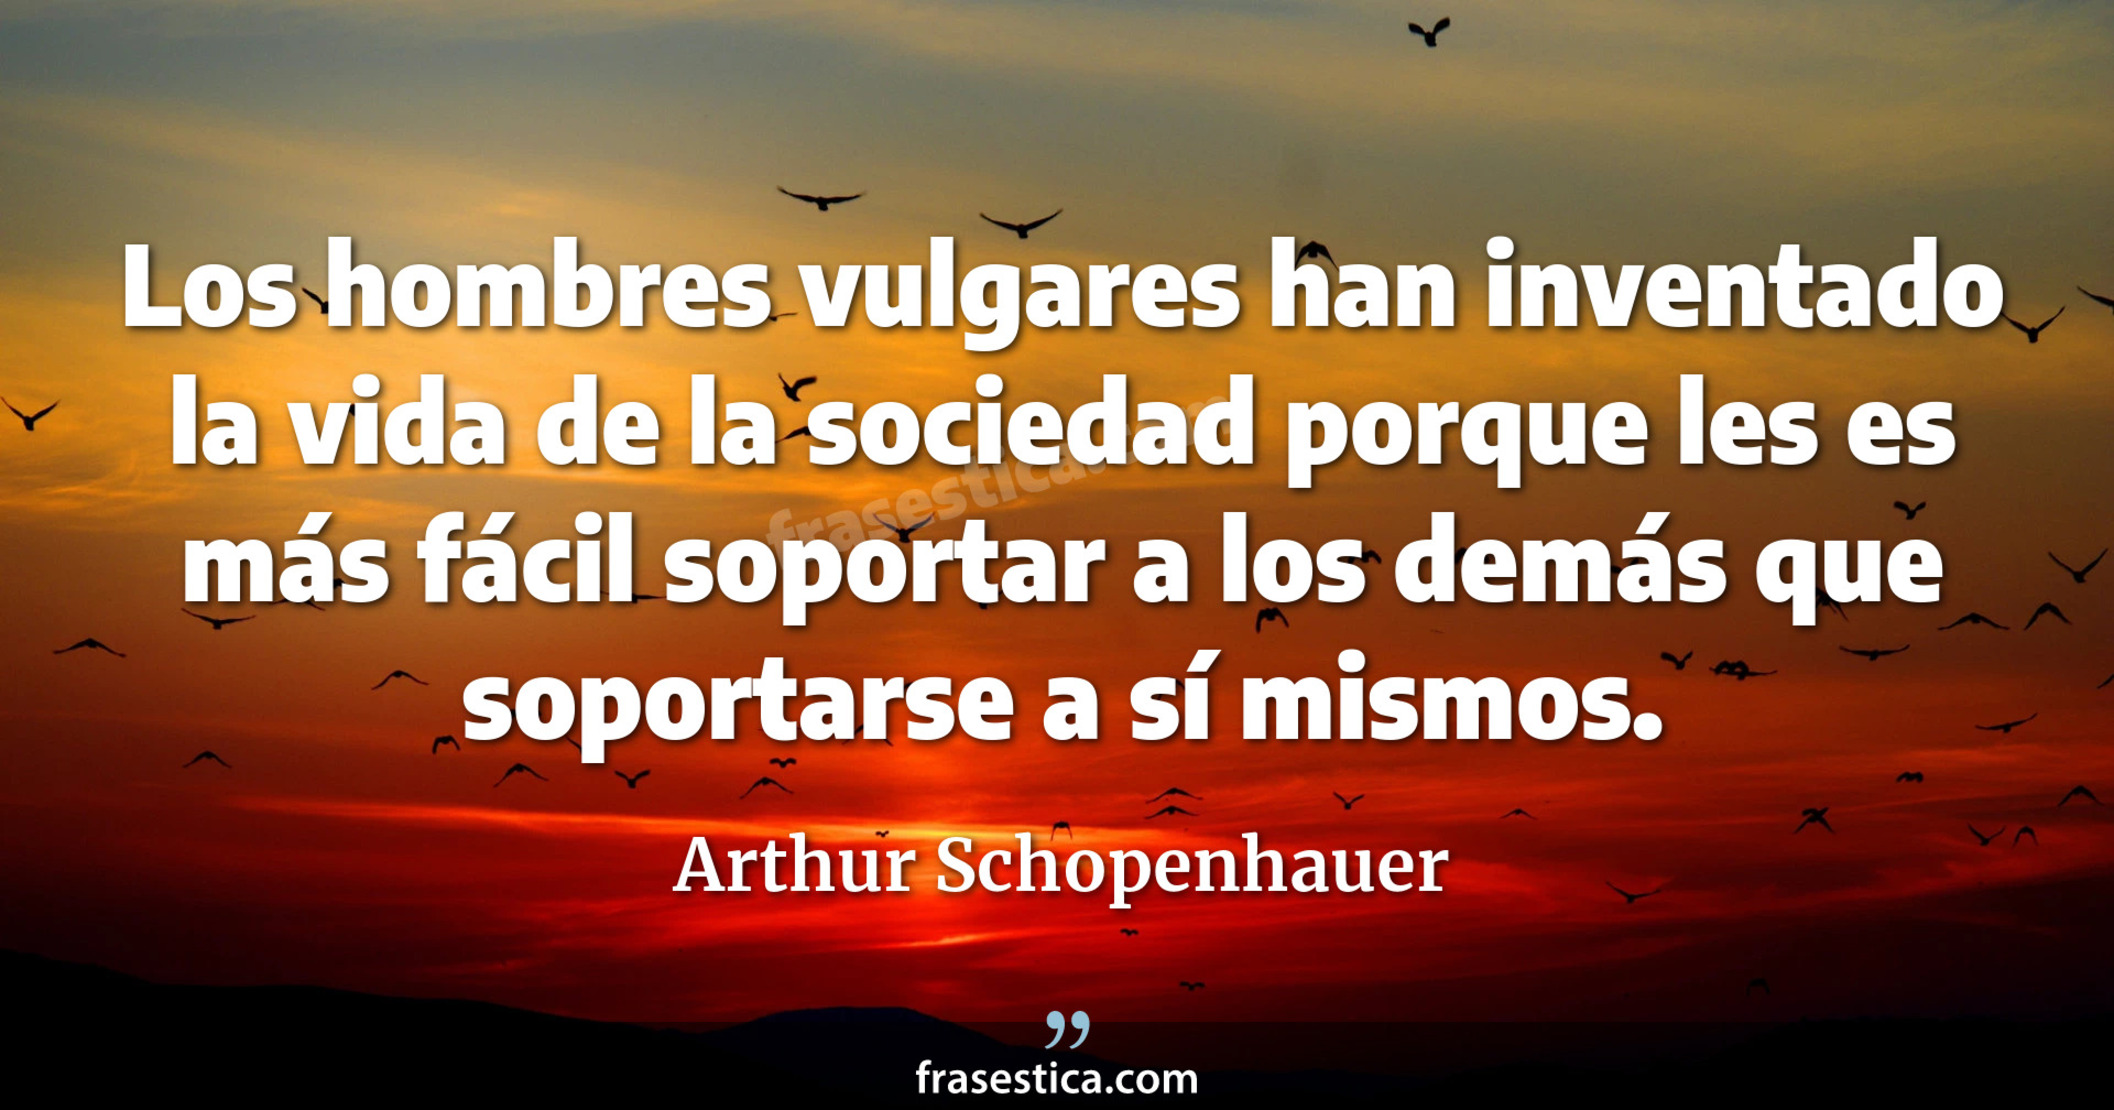 Los hombres vulgares han inventado la vida de la sociedad porque les es más fácil soportar a los demás que soportarse a sí mismos. - Arthur Schopenhauer